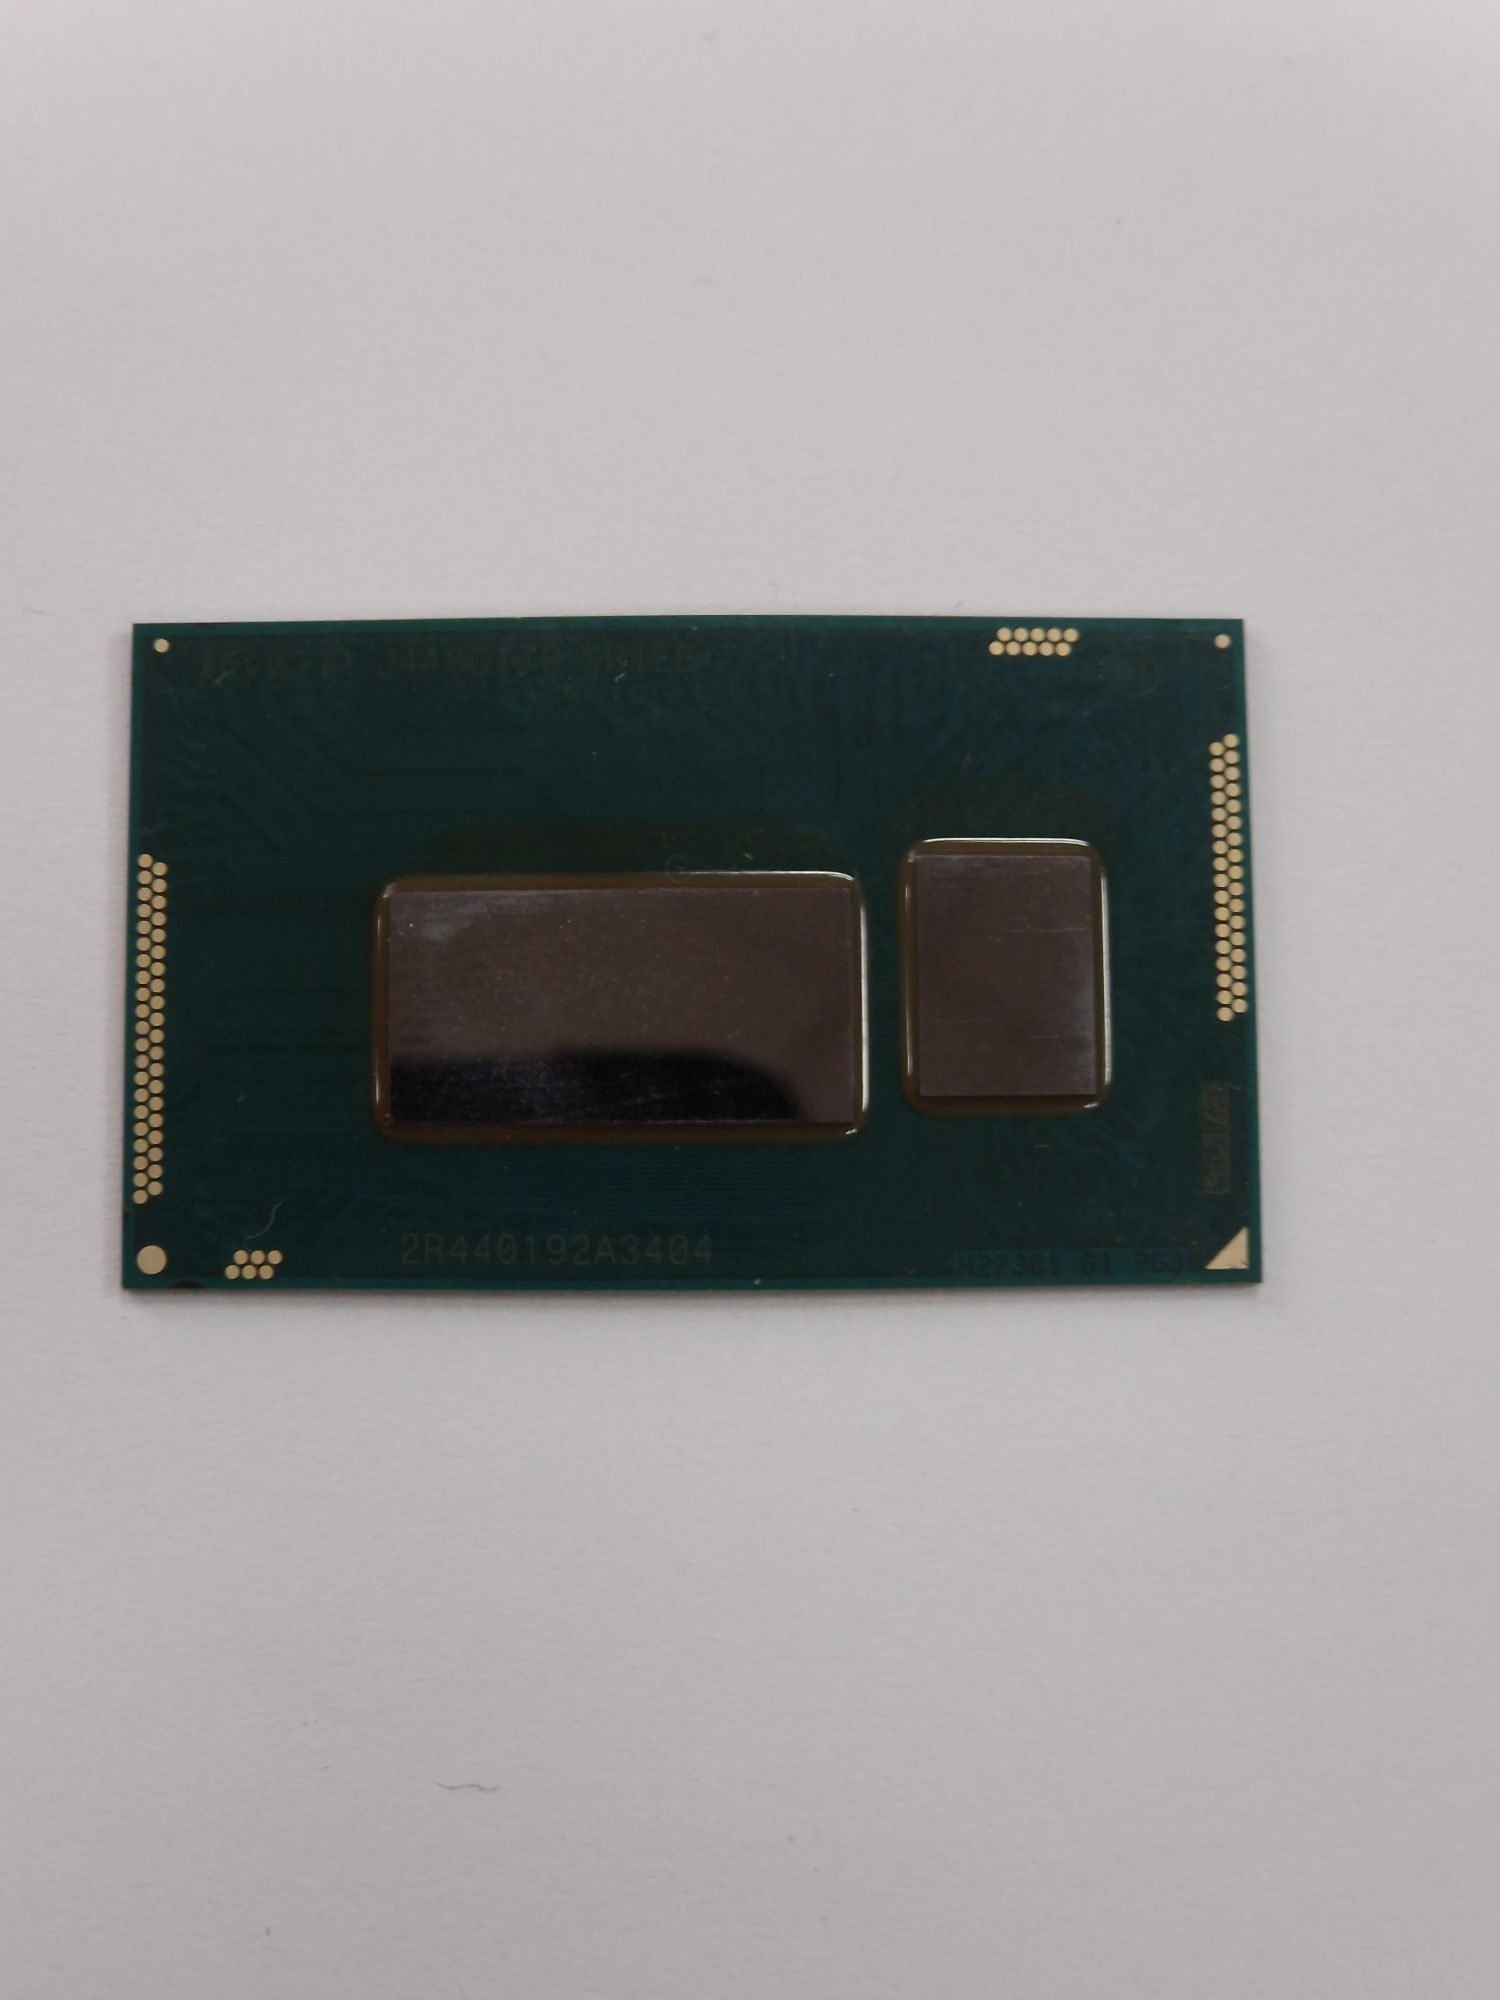 Процессор  Intel core i7 - 4510U SR1EB 3.1GHz 15 W